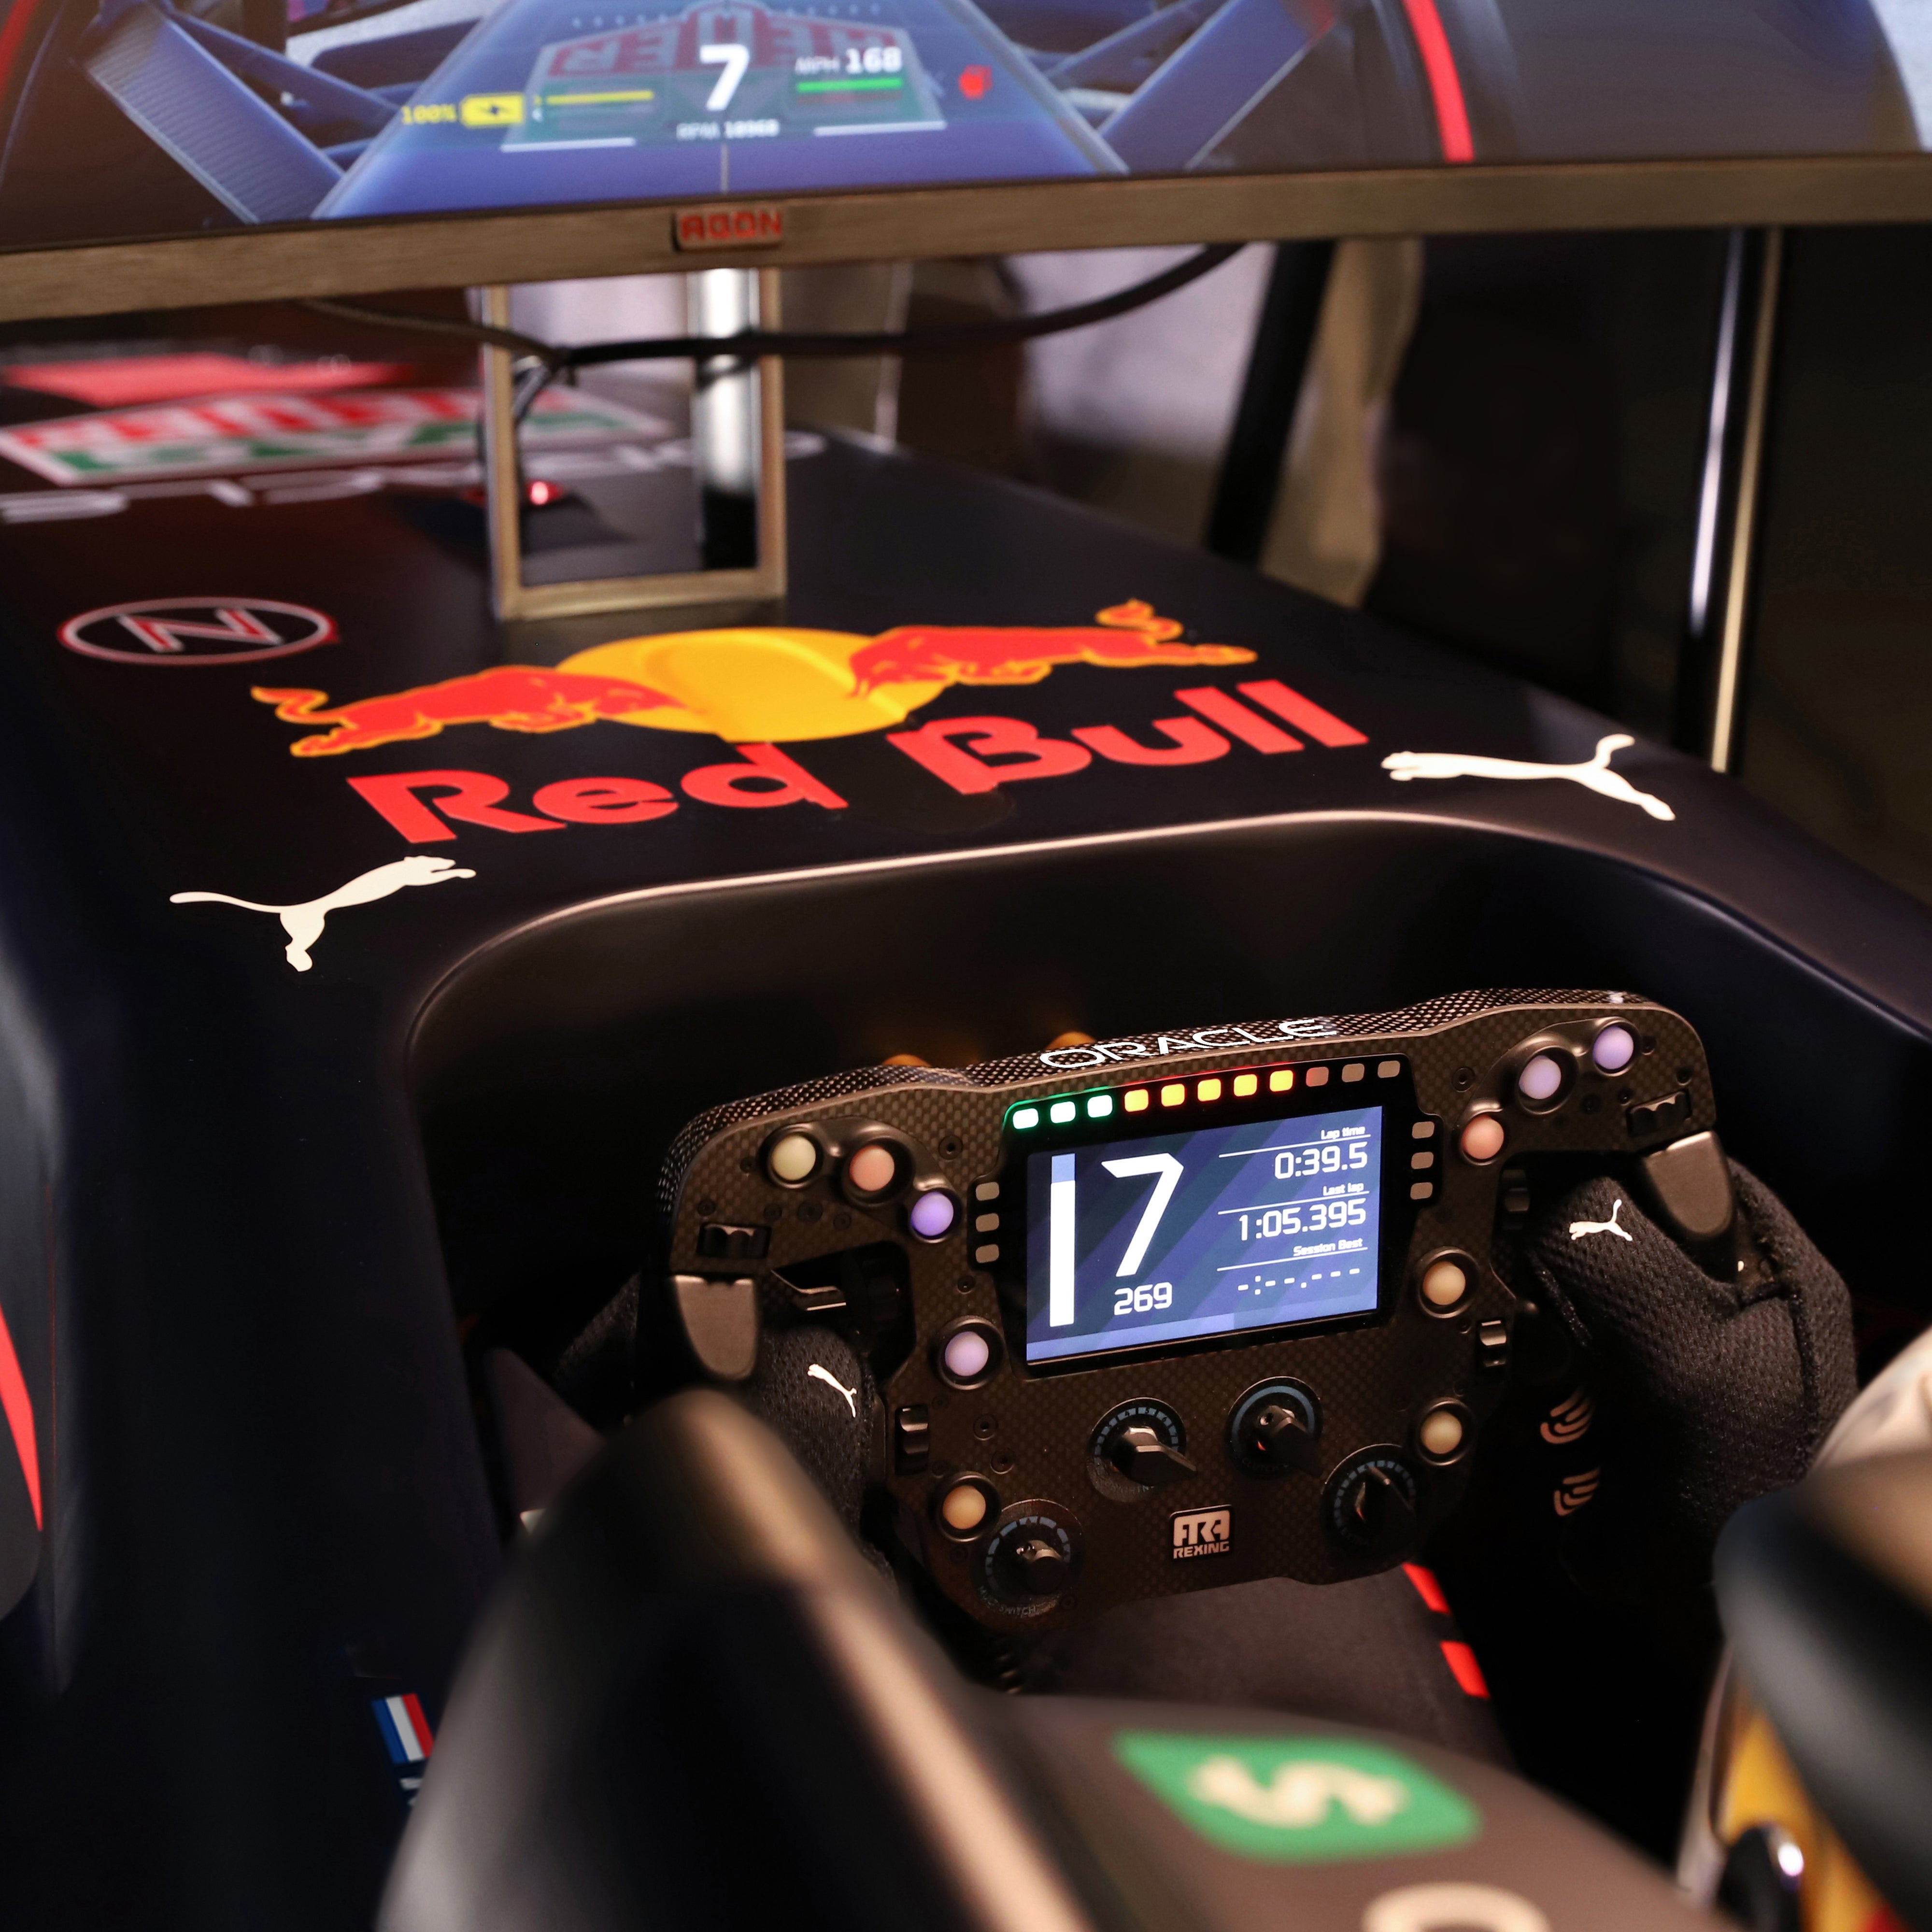 Playseat Playseat F1 Red Bull Racing: Buy Online at Best Price in UAE 